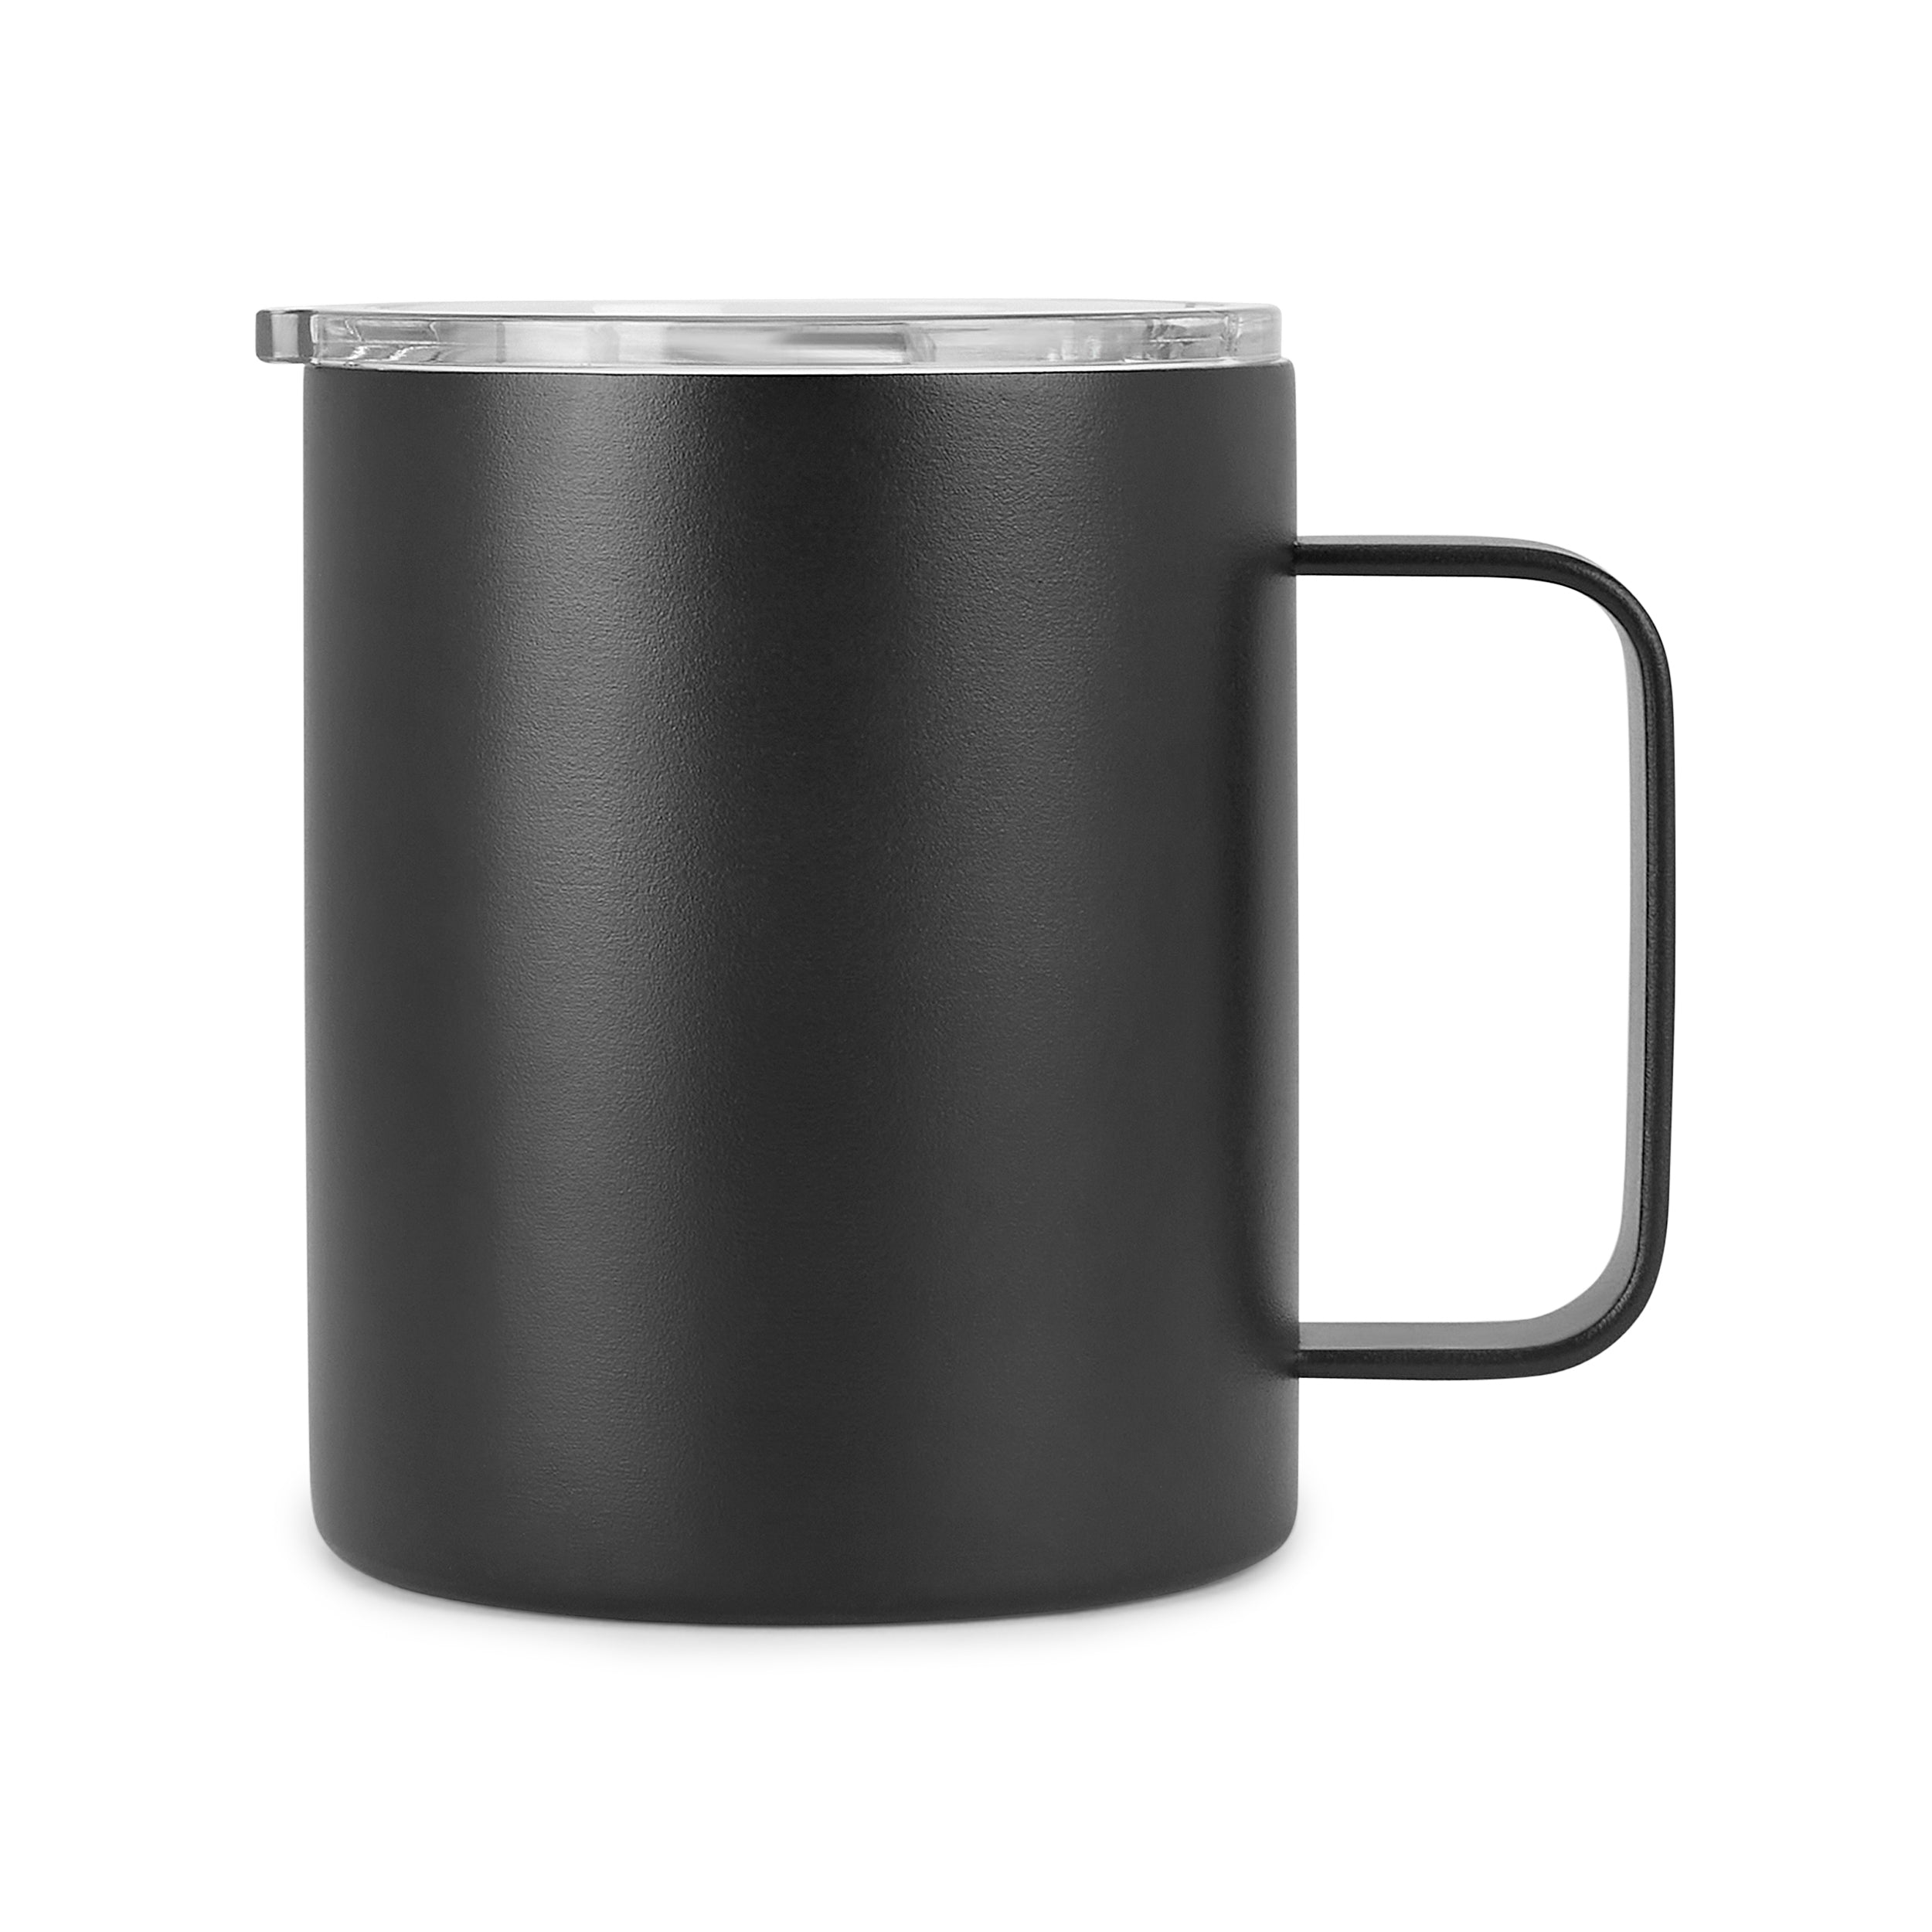 12oz Coffee Mug For Halloween